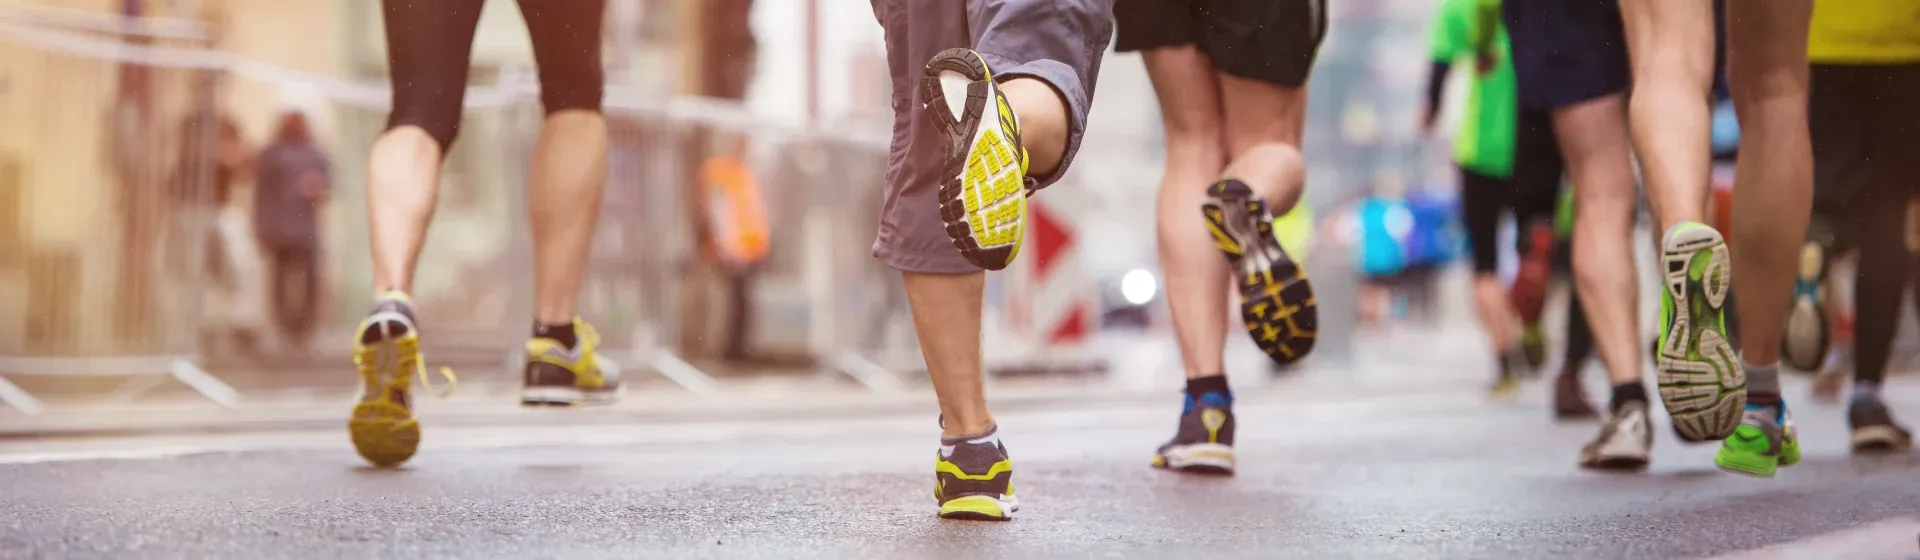 Corrida de rua: 7 dicas de uma corredora para vencer longas distâncias